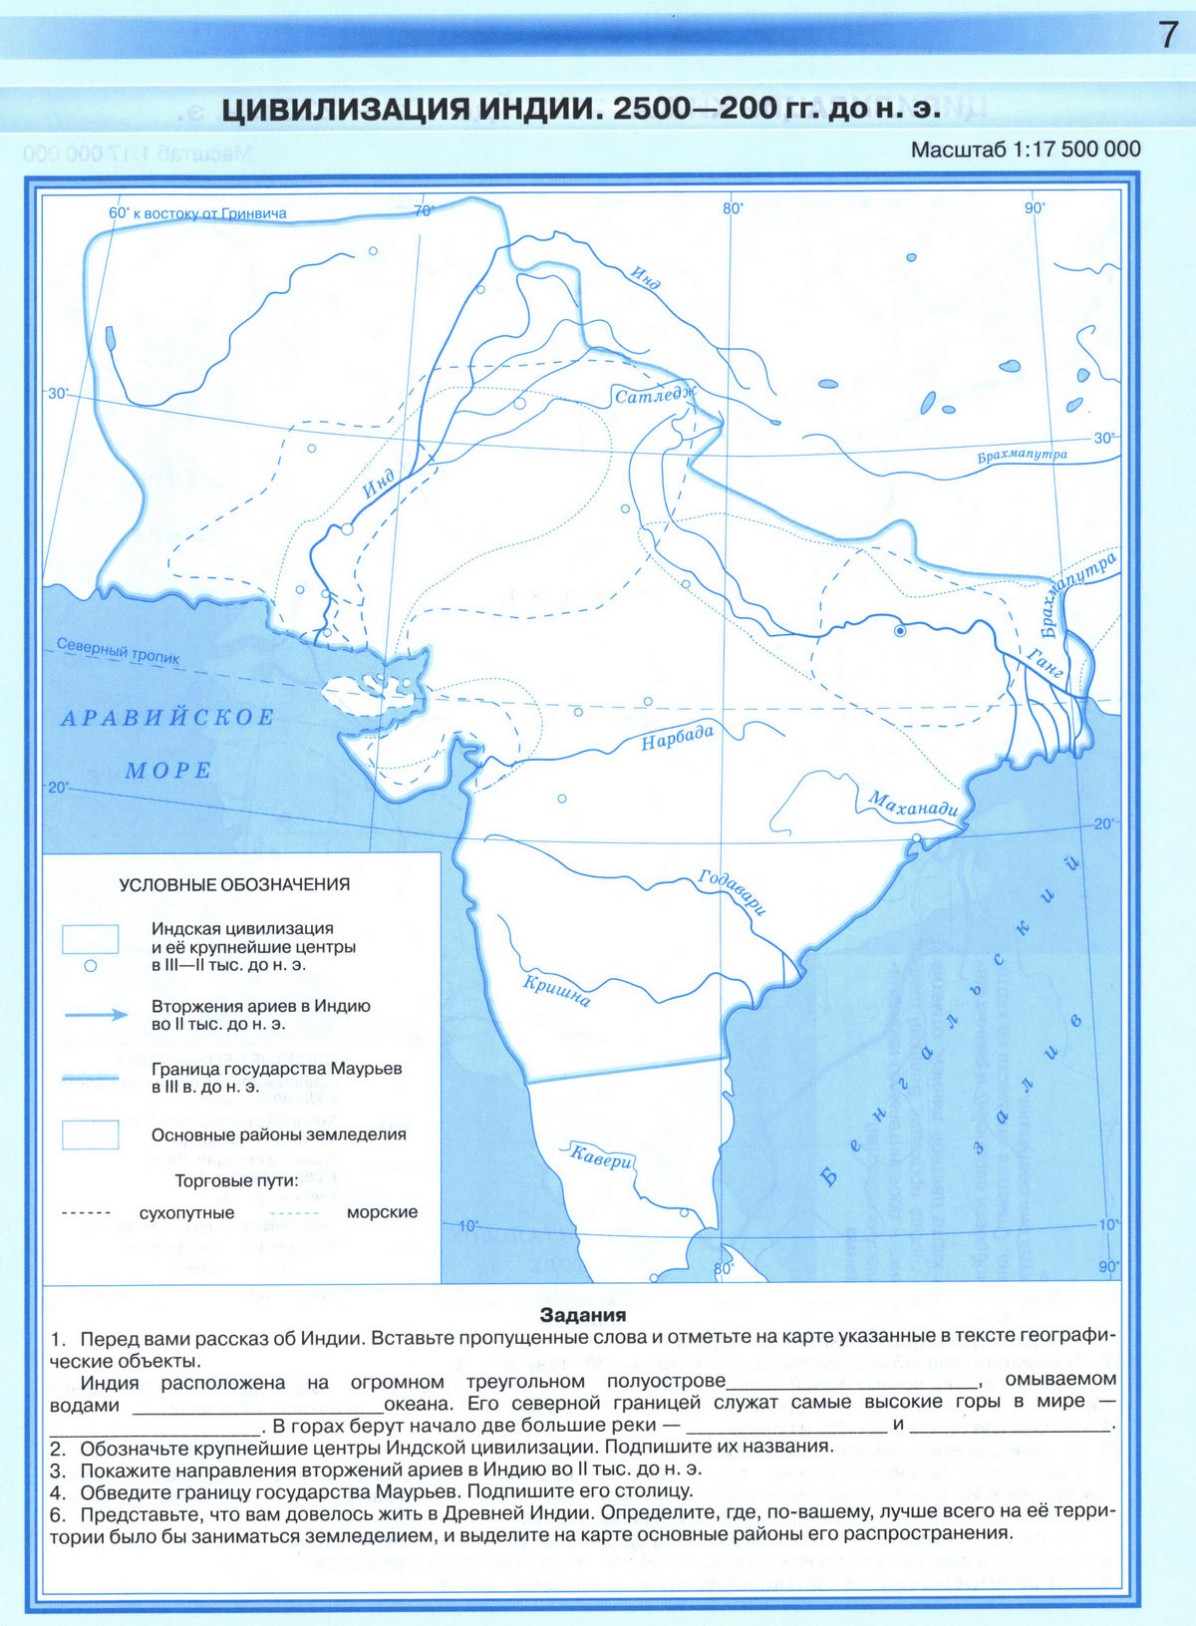 Цивилизация Индии - чистая контурная карта по истории Дрофа - 2023